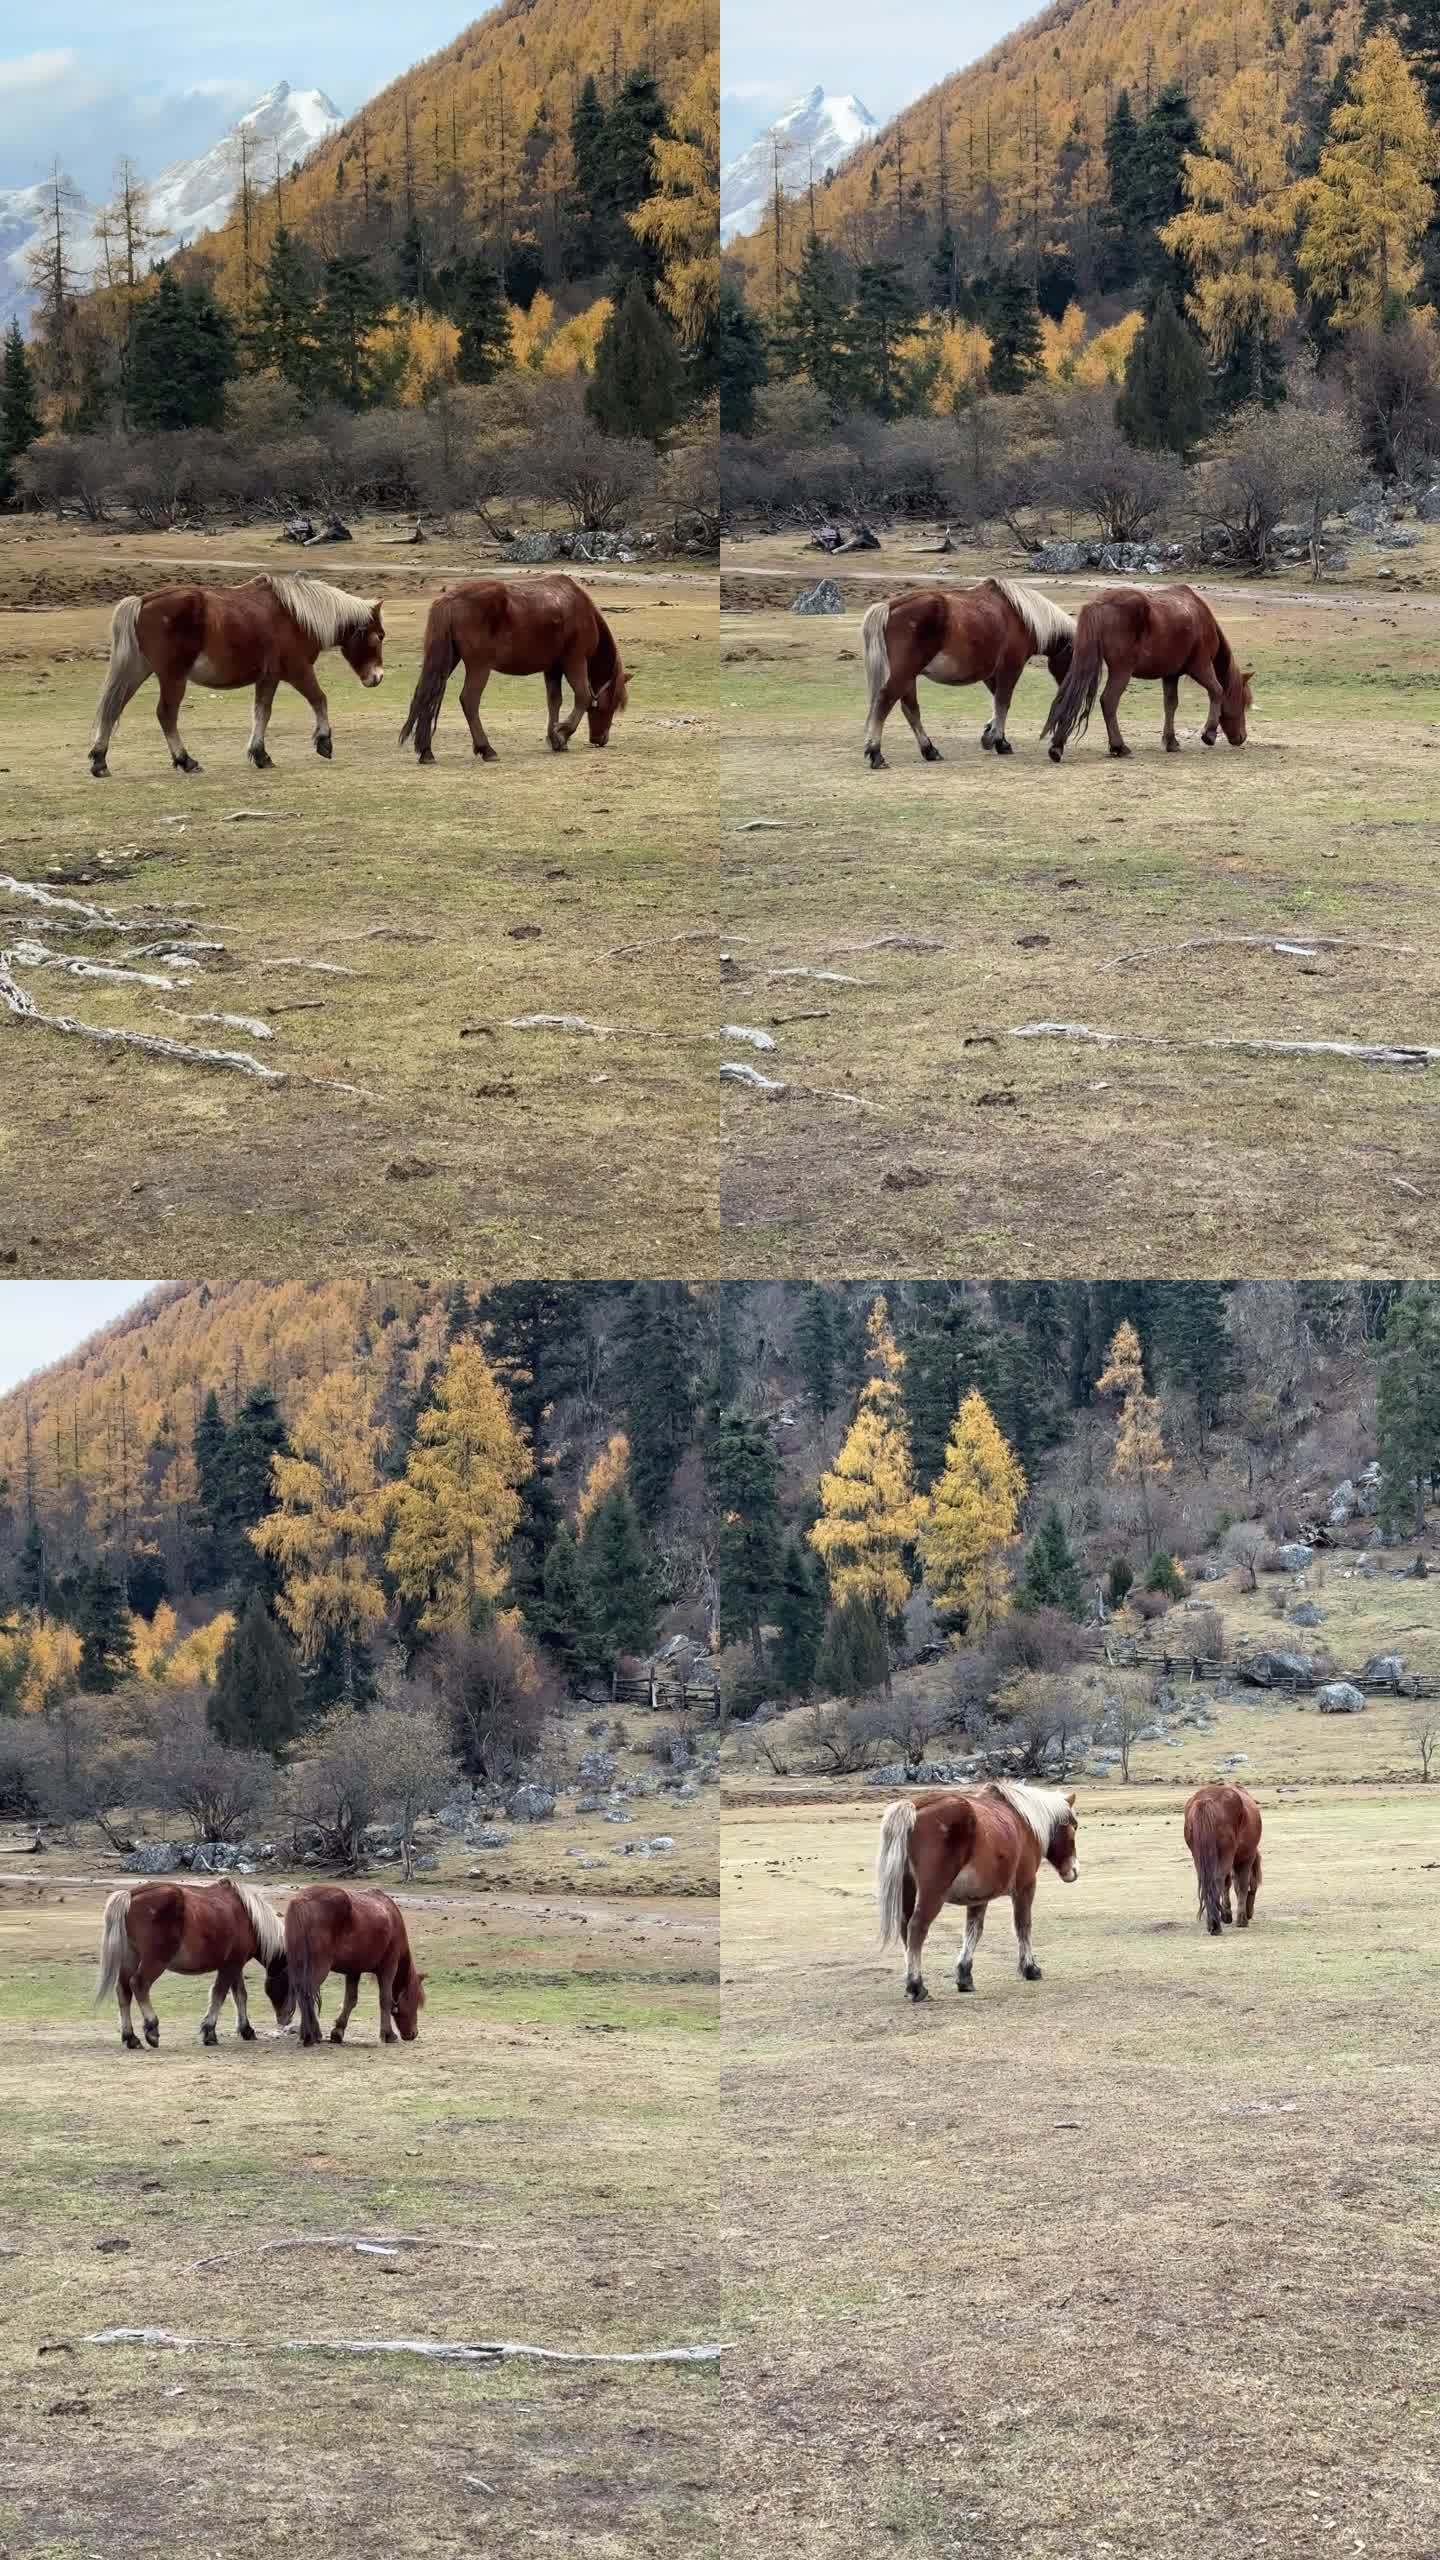 高原雪山两匹马一边行走一边悠闲自在的吃草